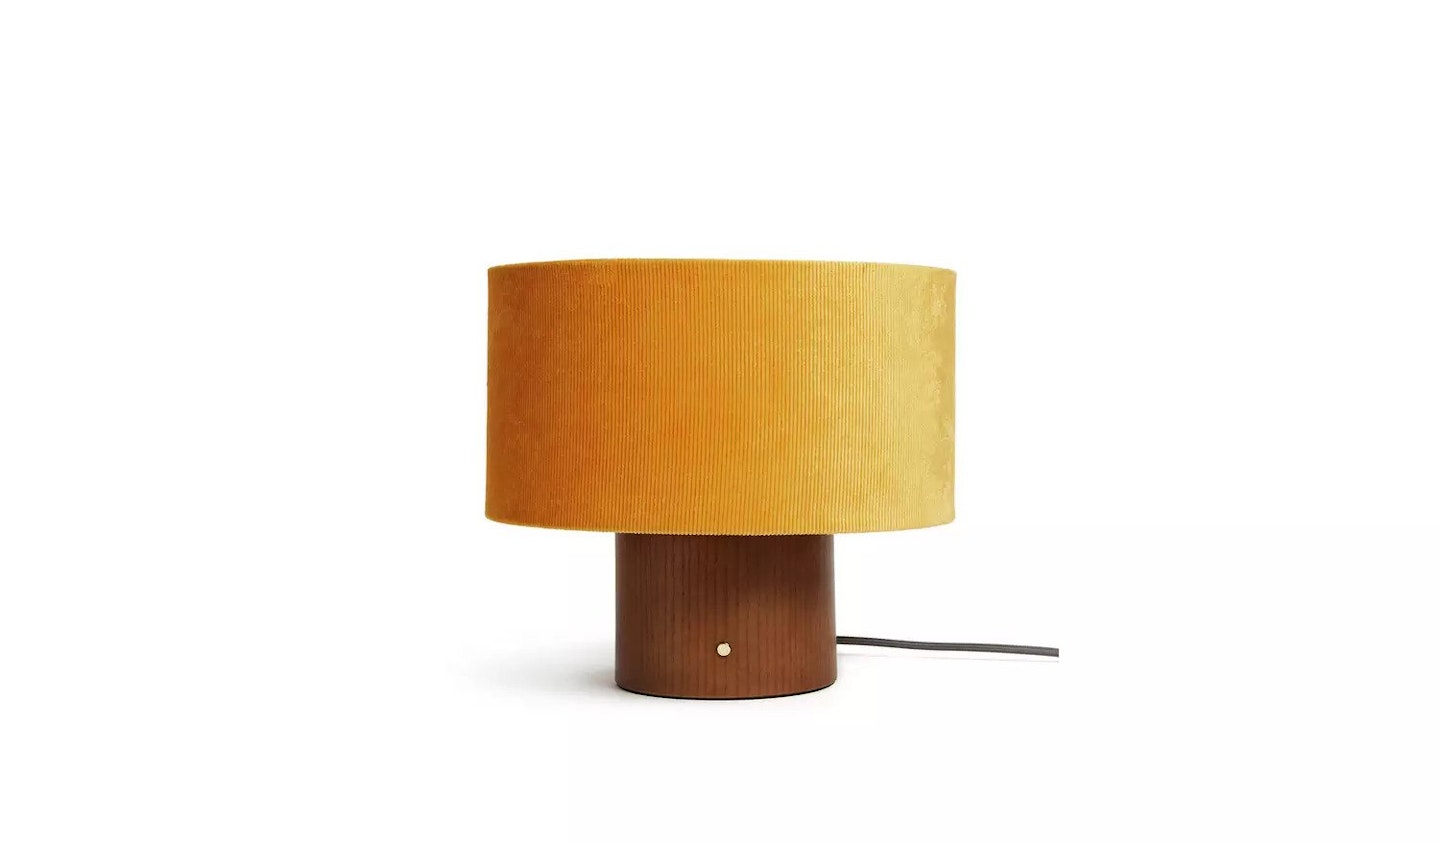 Habitat, Corduroy Touch Table Lamp - Mustard & Walnut, £52